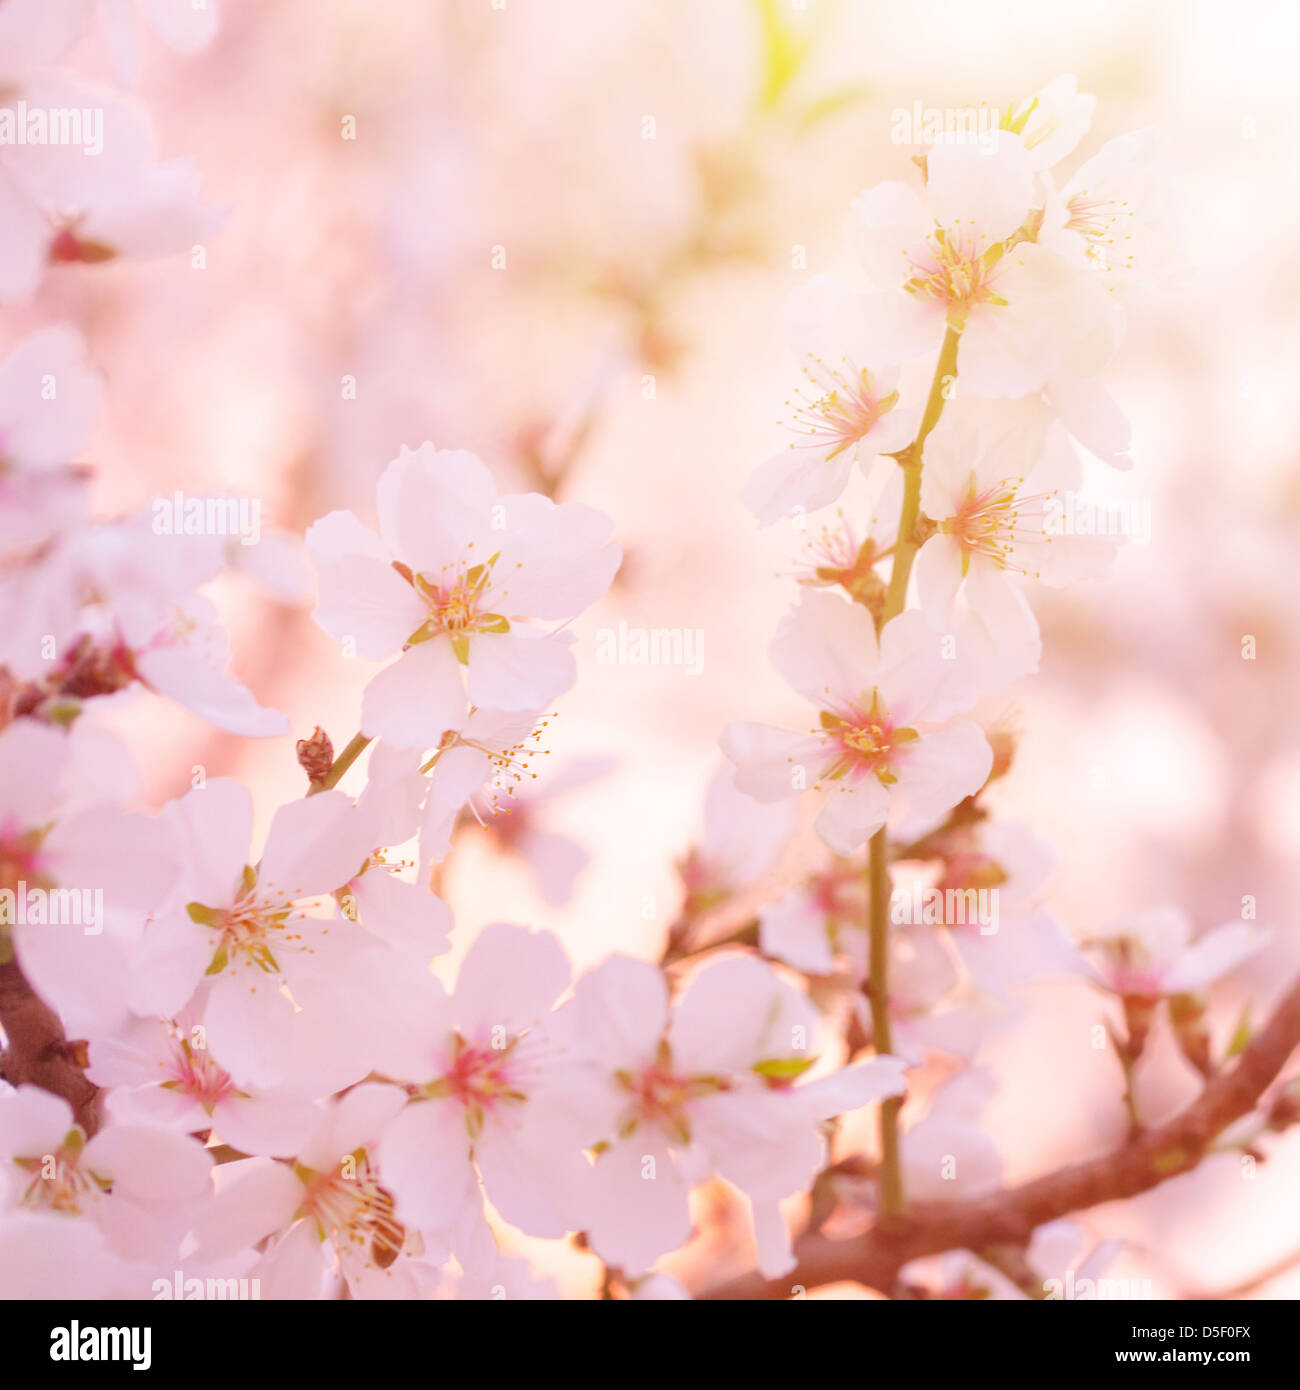 Schöne Spannkluppen Apfelbaum blüht, bildende Kunst, Weichzeichner, kleine weiße Blüten auf Ast, Frühling Stockfoto